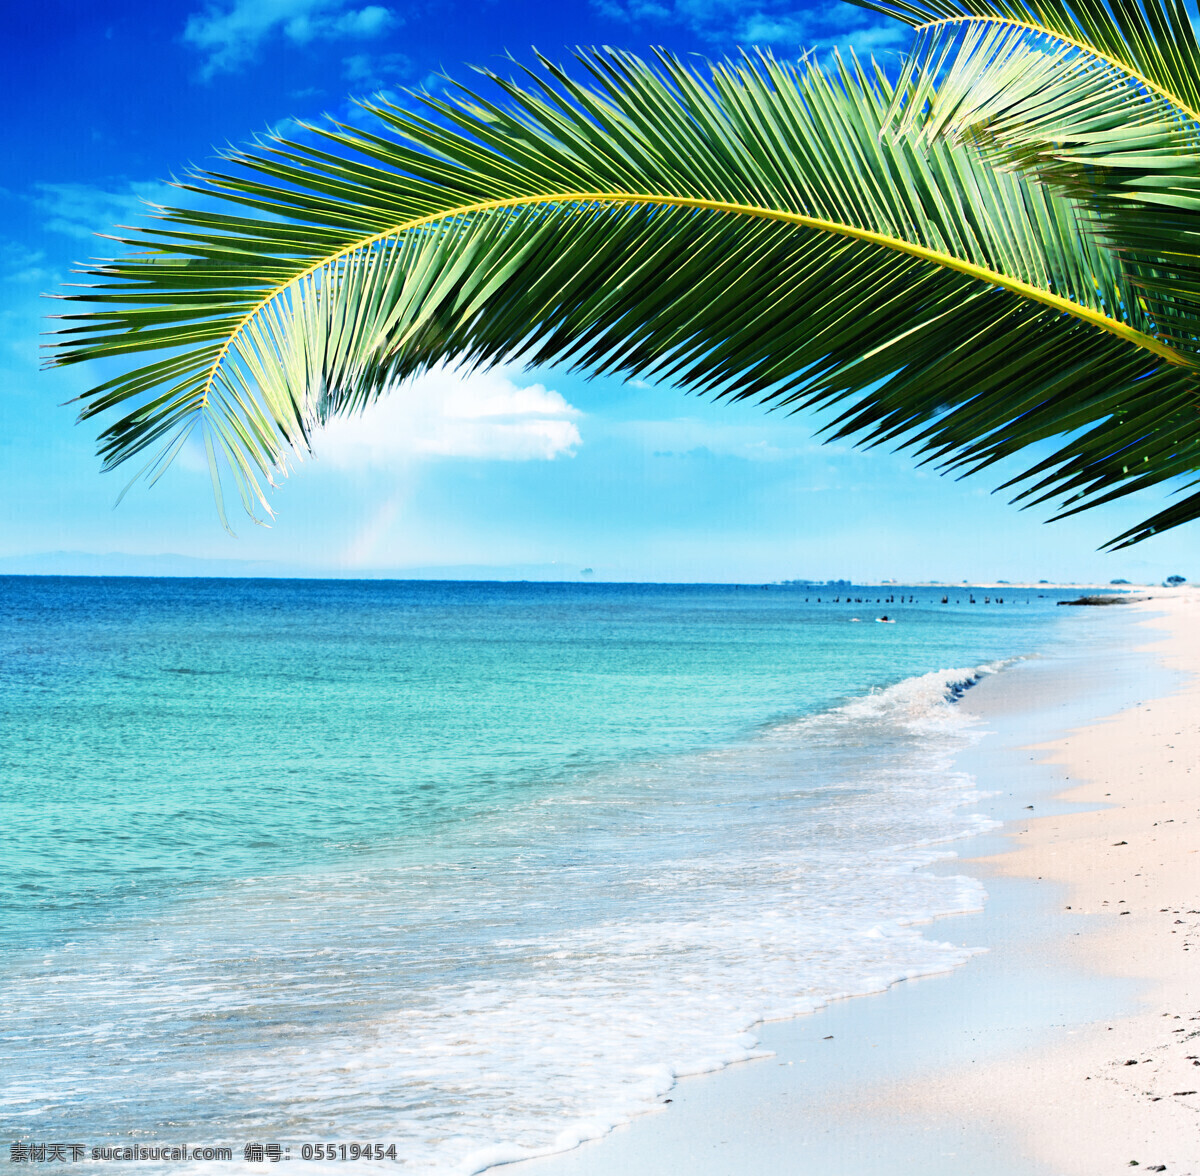 美丽 海边 风景 美丽海滩 海边风景 天空 蓝天白云 夏天 夏日 夏季 沙滩 海滩 海平面 椰树 大海 海洋 海浪 海景 景色 美景 摄影图 高清图片 大海图片 风景图片